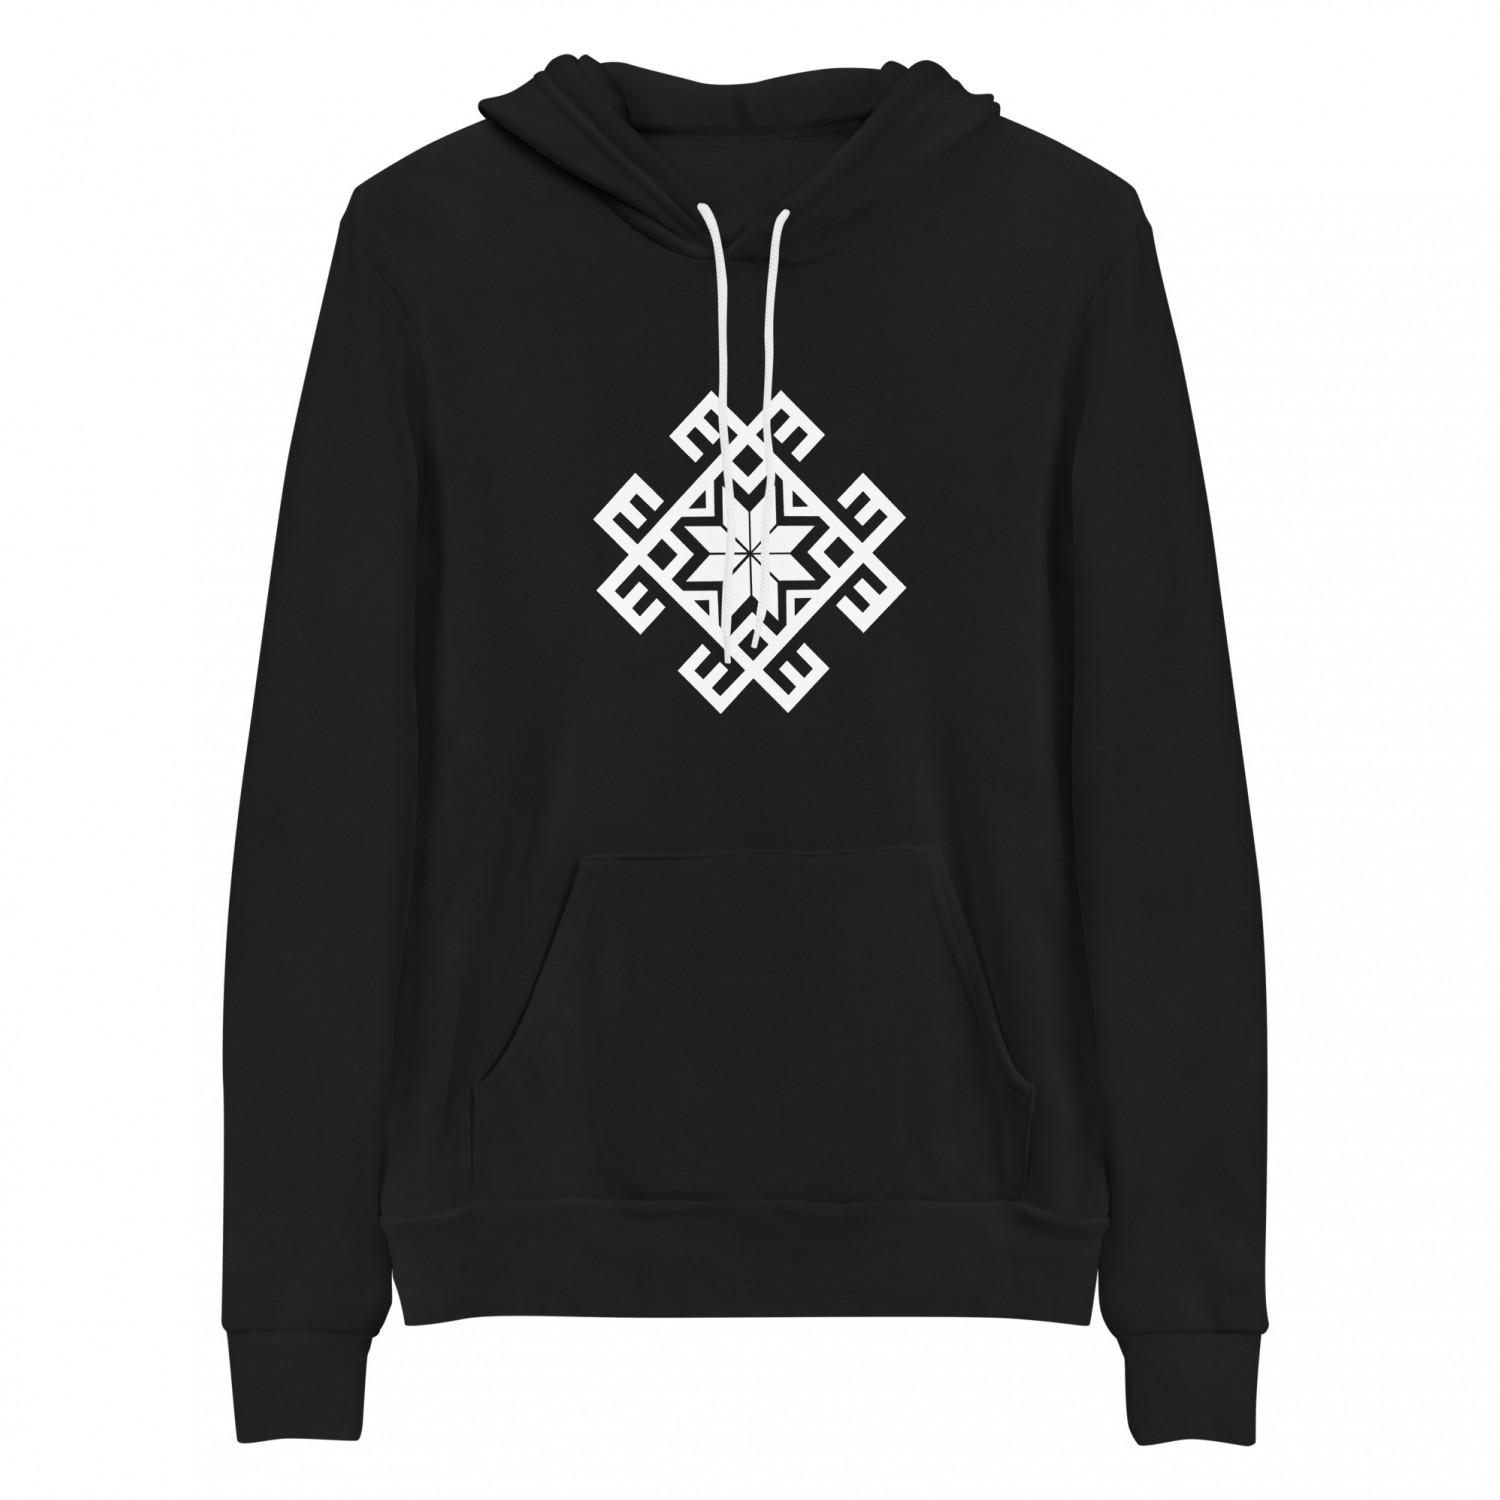 Buy "Alatyr" hoodie